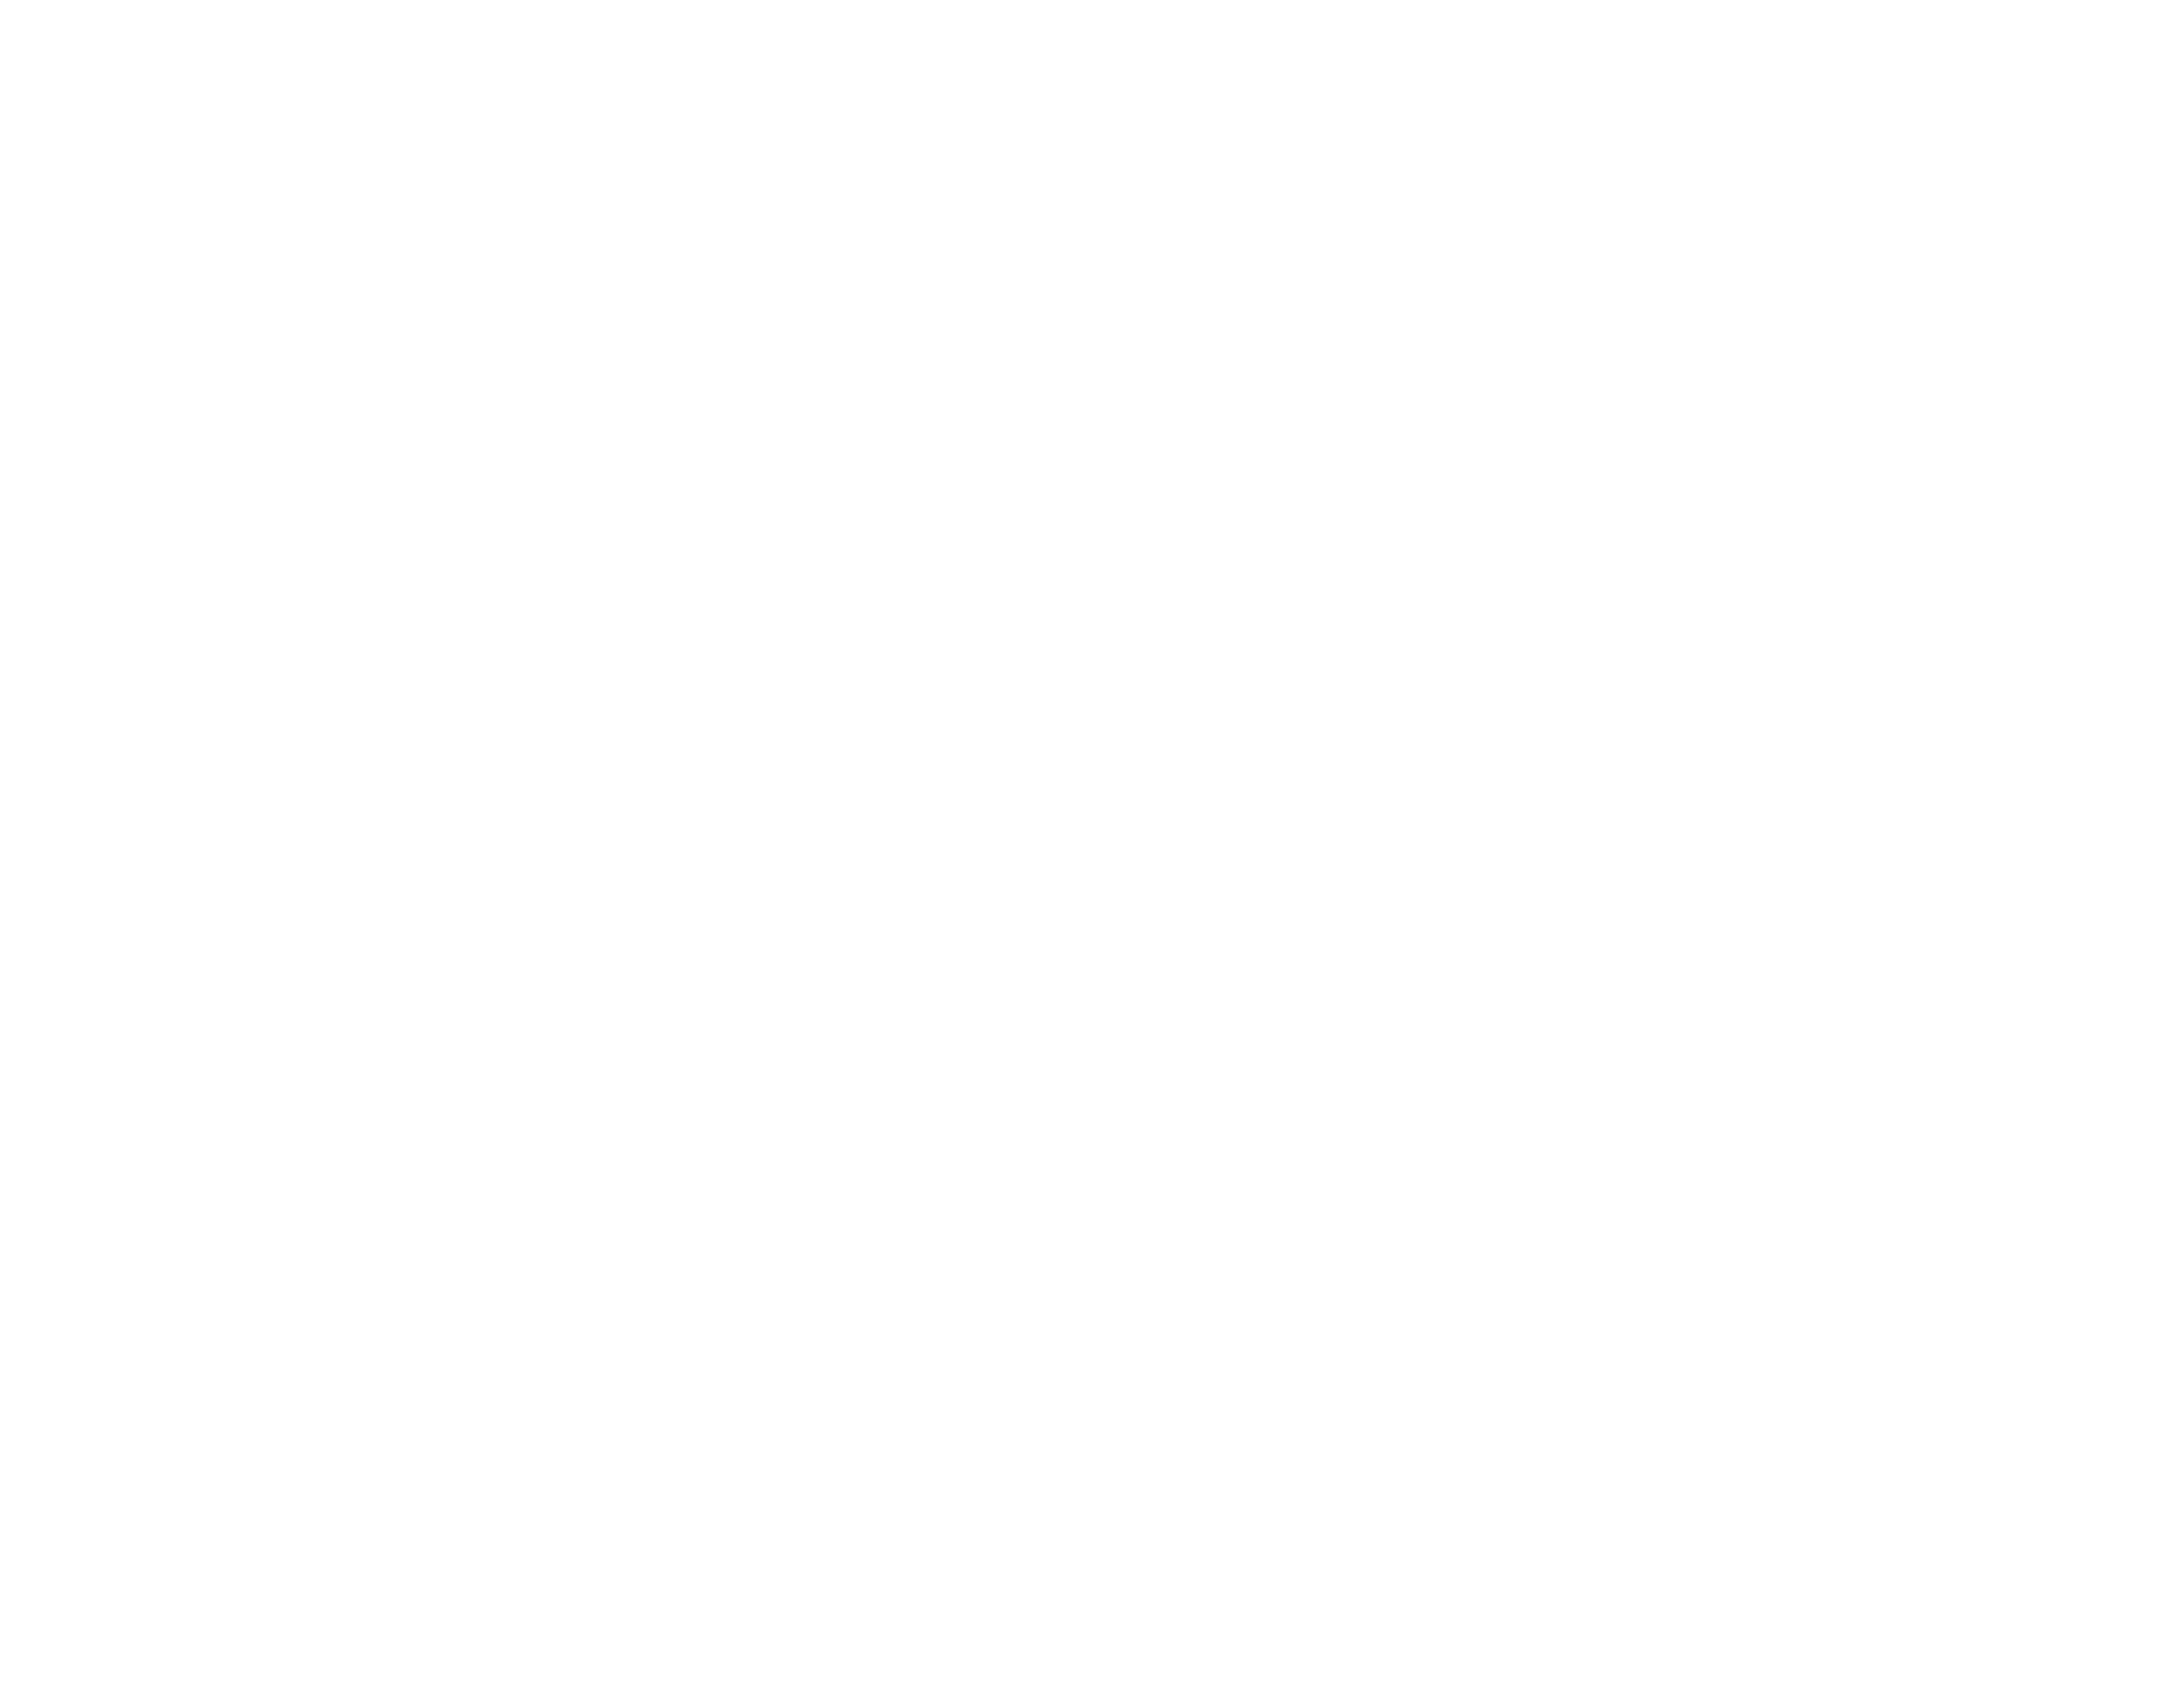 Bushwick Film Festival